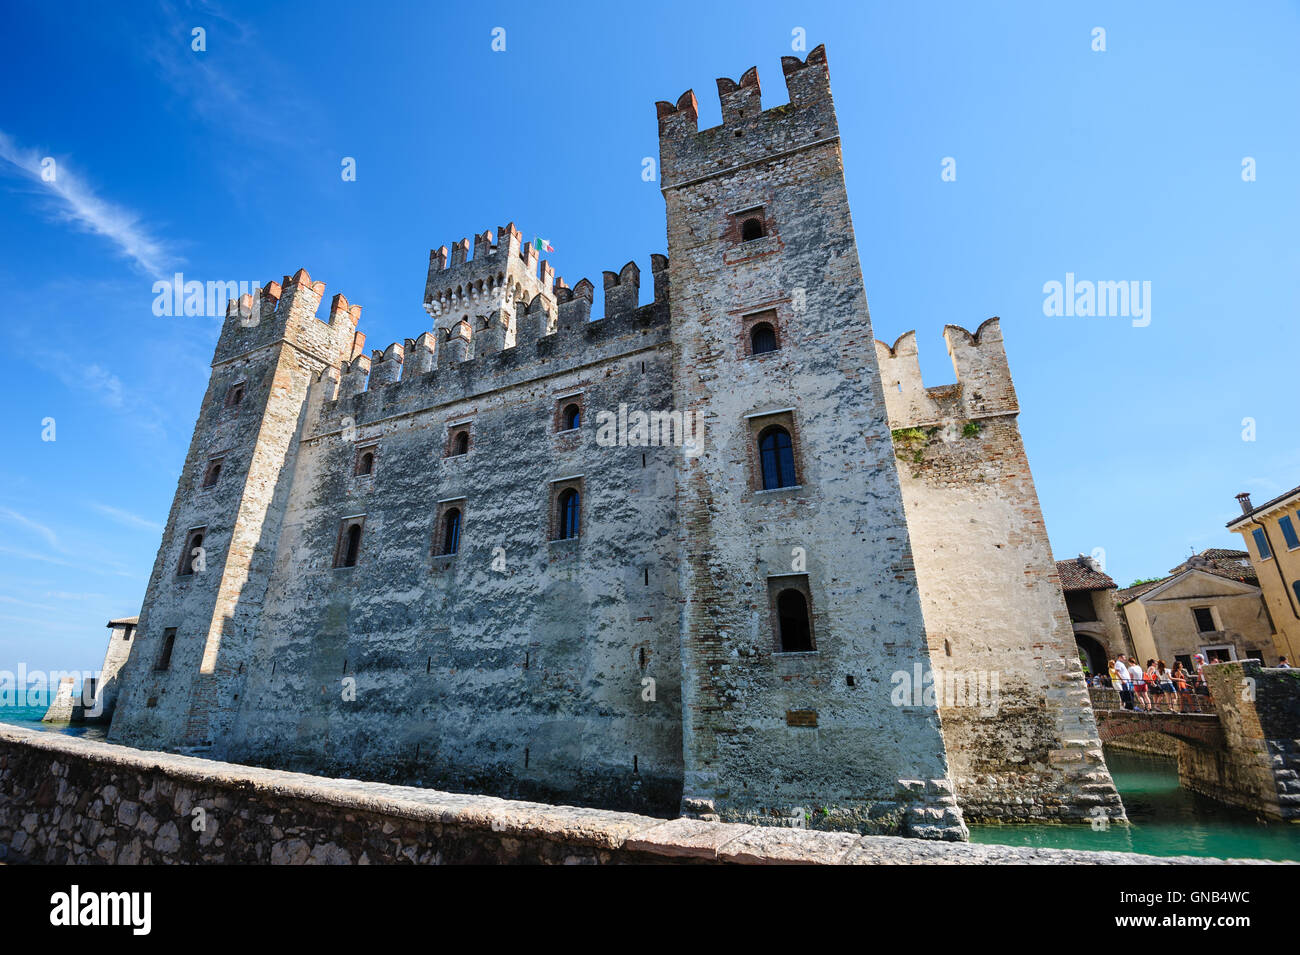 Castello medievale Scaliger nella vecchia città di Sirmione sul Lago di Garda, Italia settentrionale Foto Stock